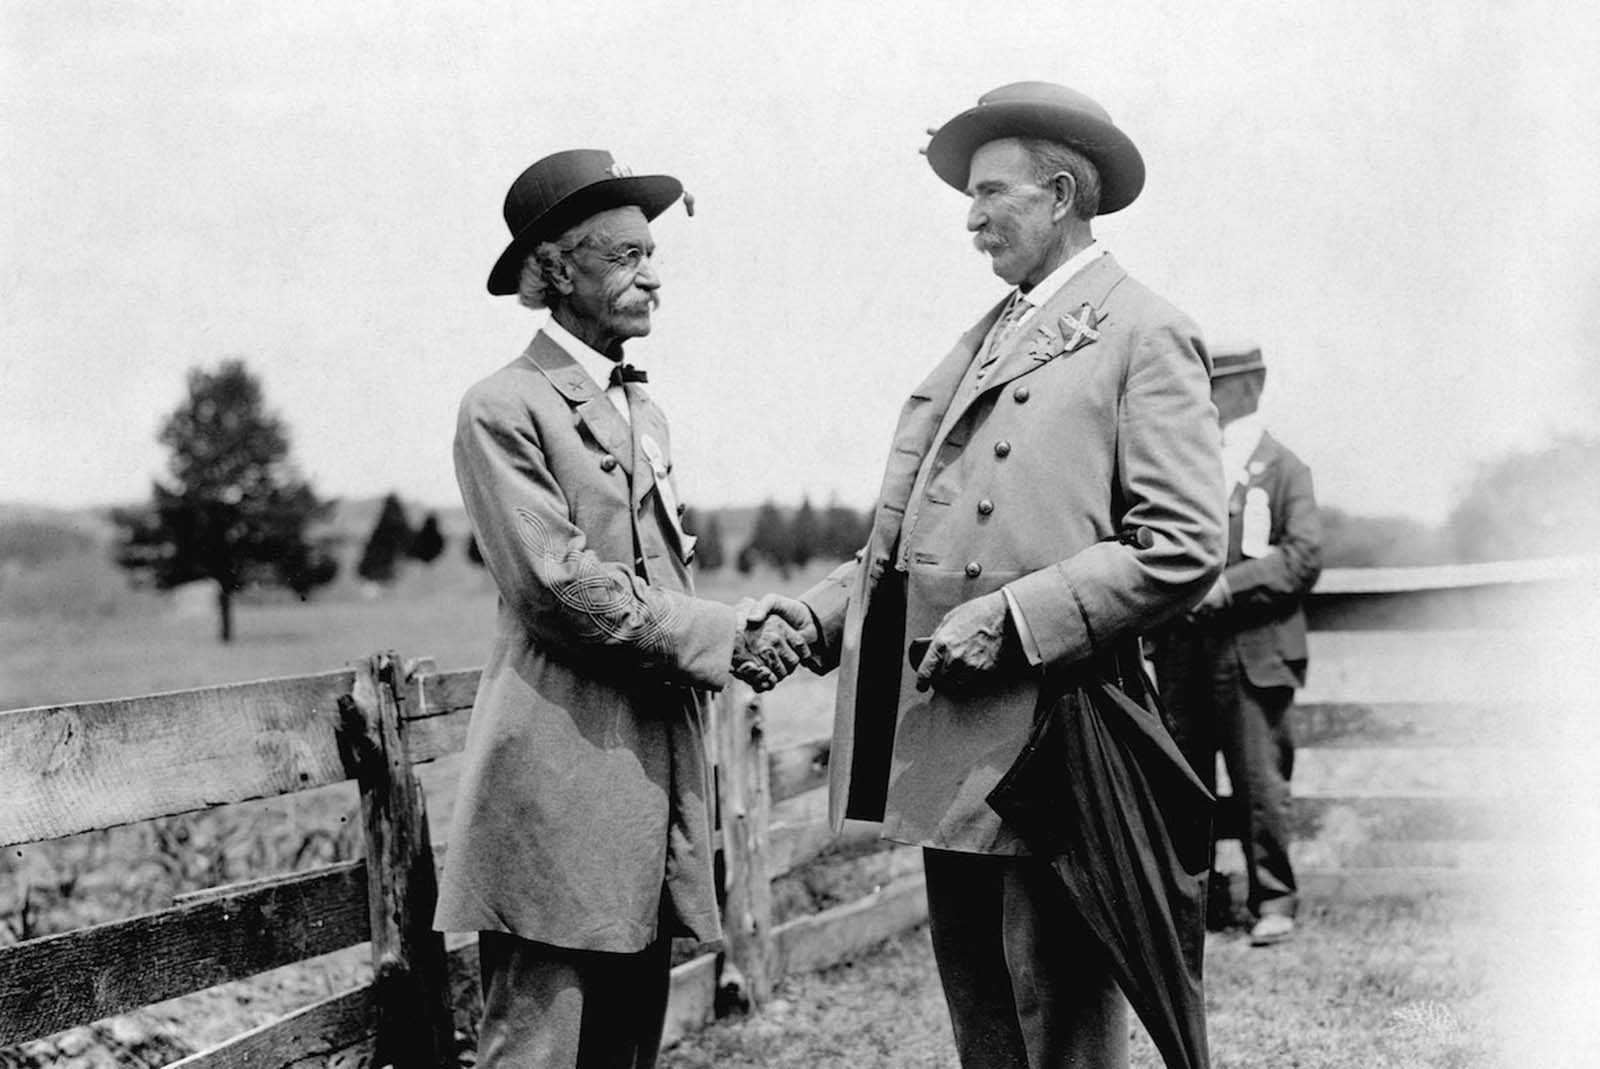 Manassas, Virginia — Veterans of the Civil War meet on the Bull Run Battlefield for a reunion celebration. 1913.